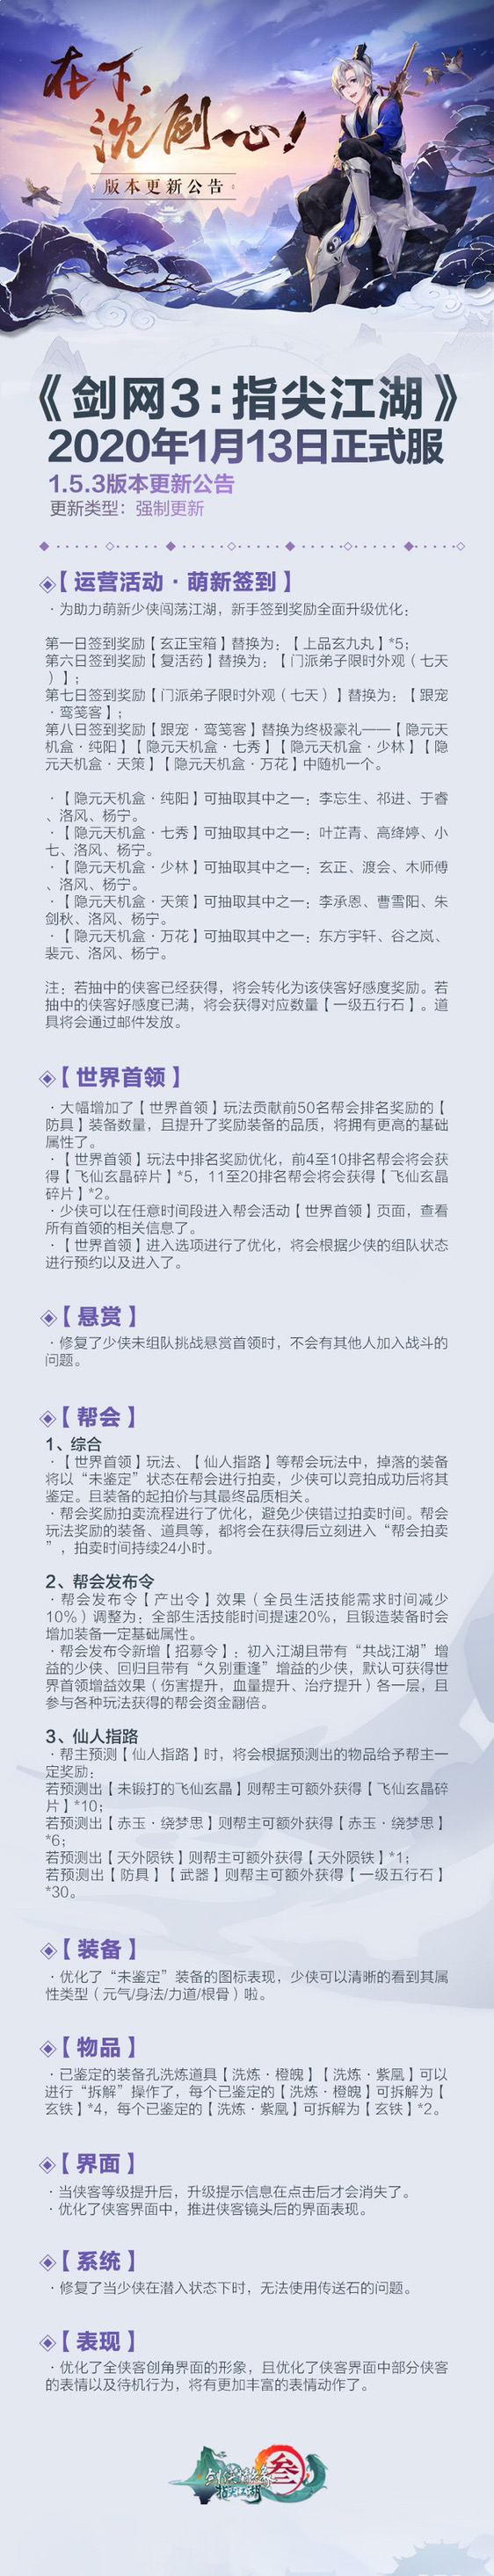 【剑网3指尖江湖1.5.3版本更新公告】2020.1.13